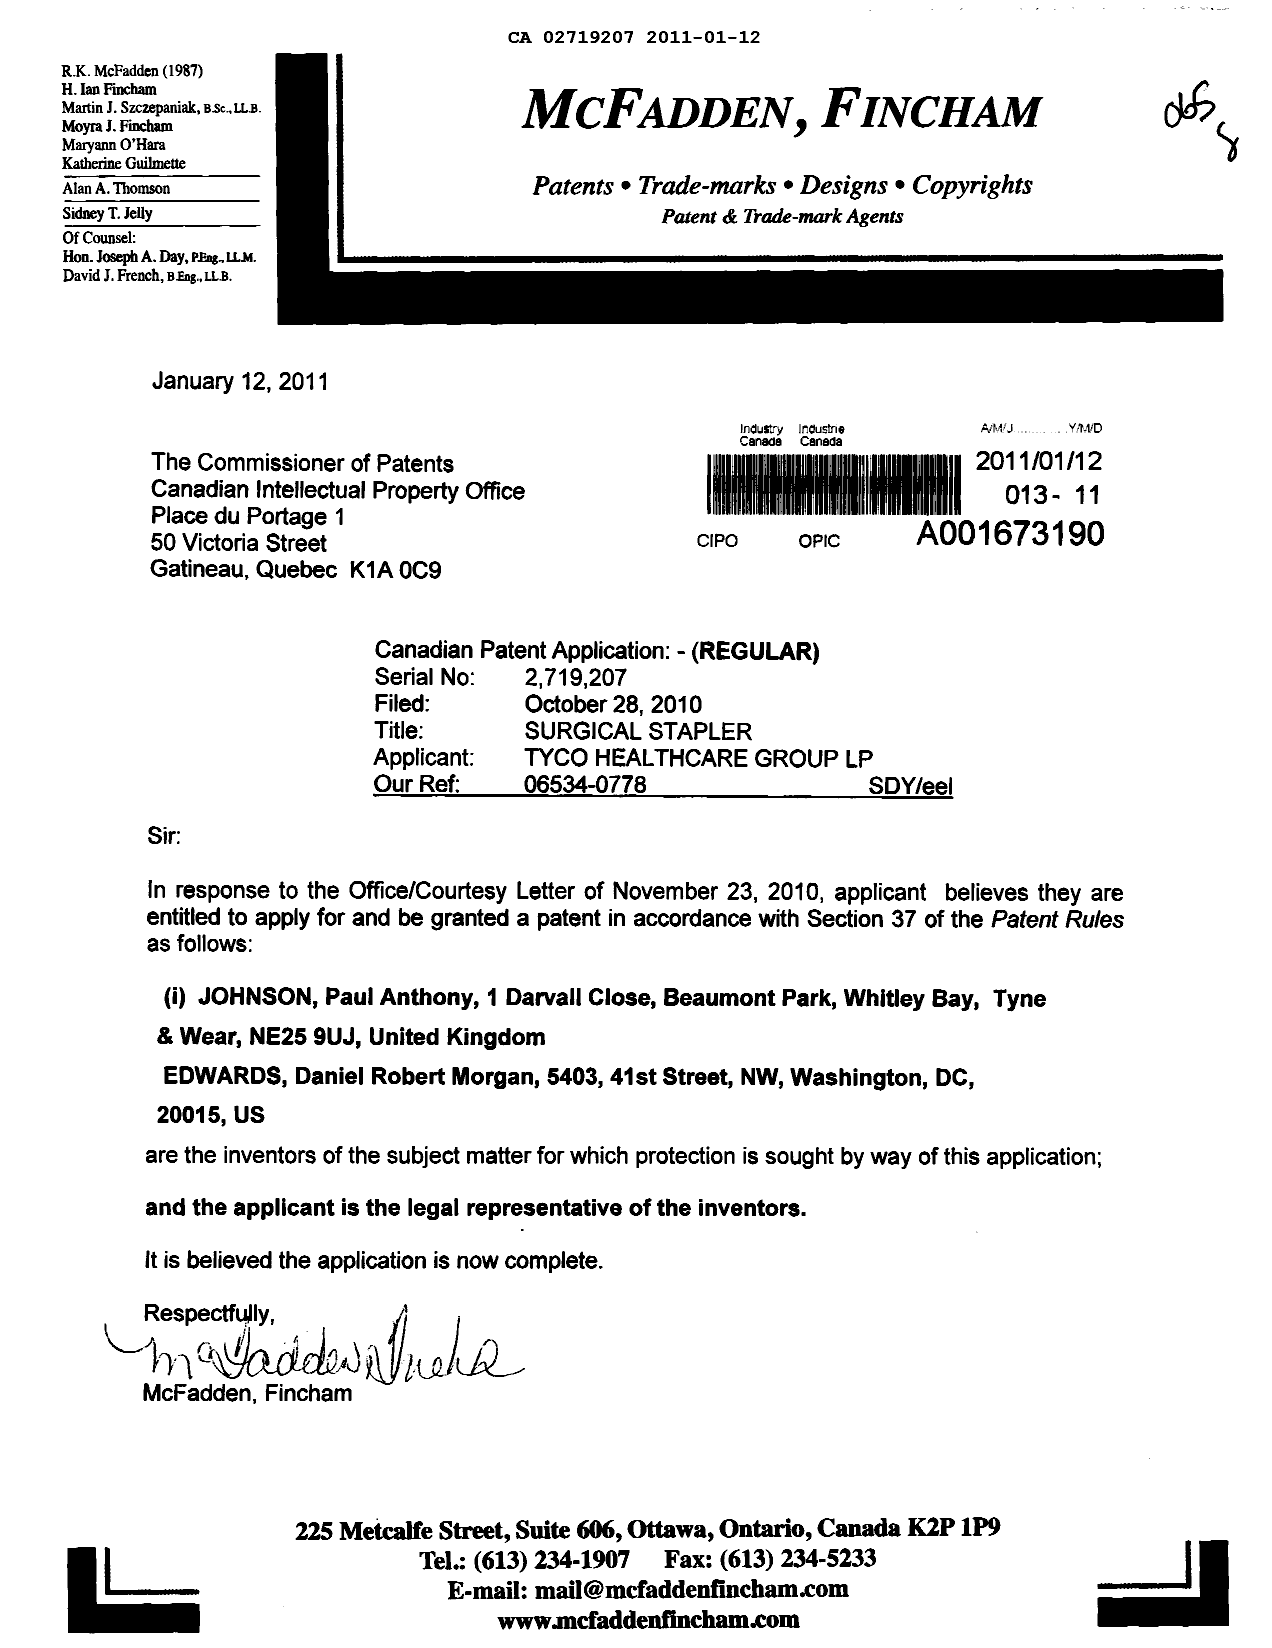 Document de brevet canadien 2719207. Correspondance 20110112. Image 1 de 1